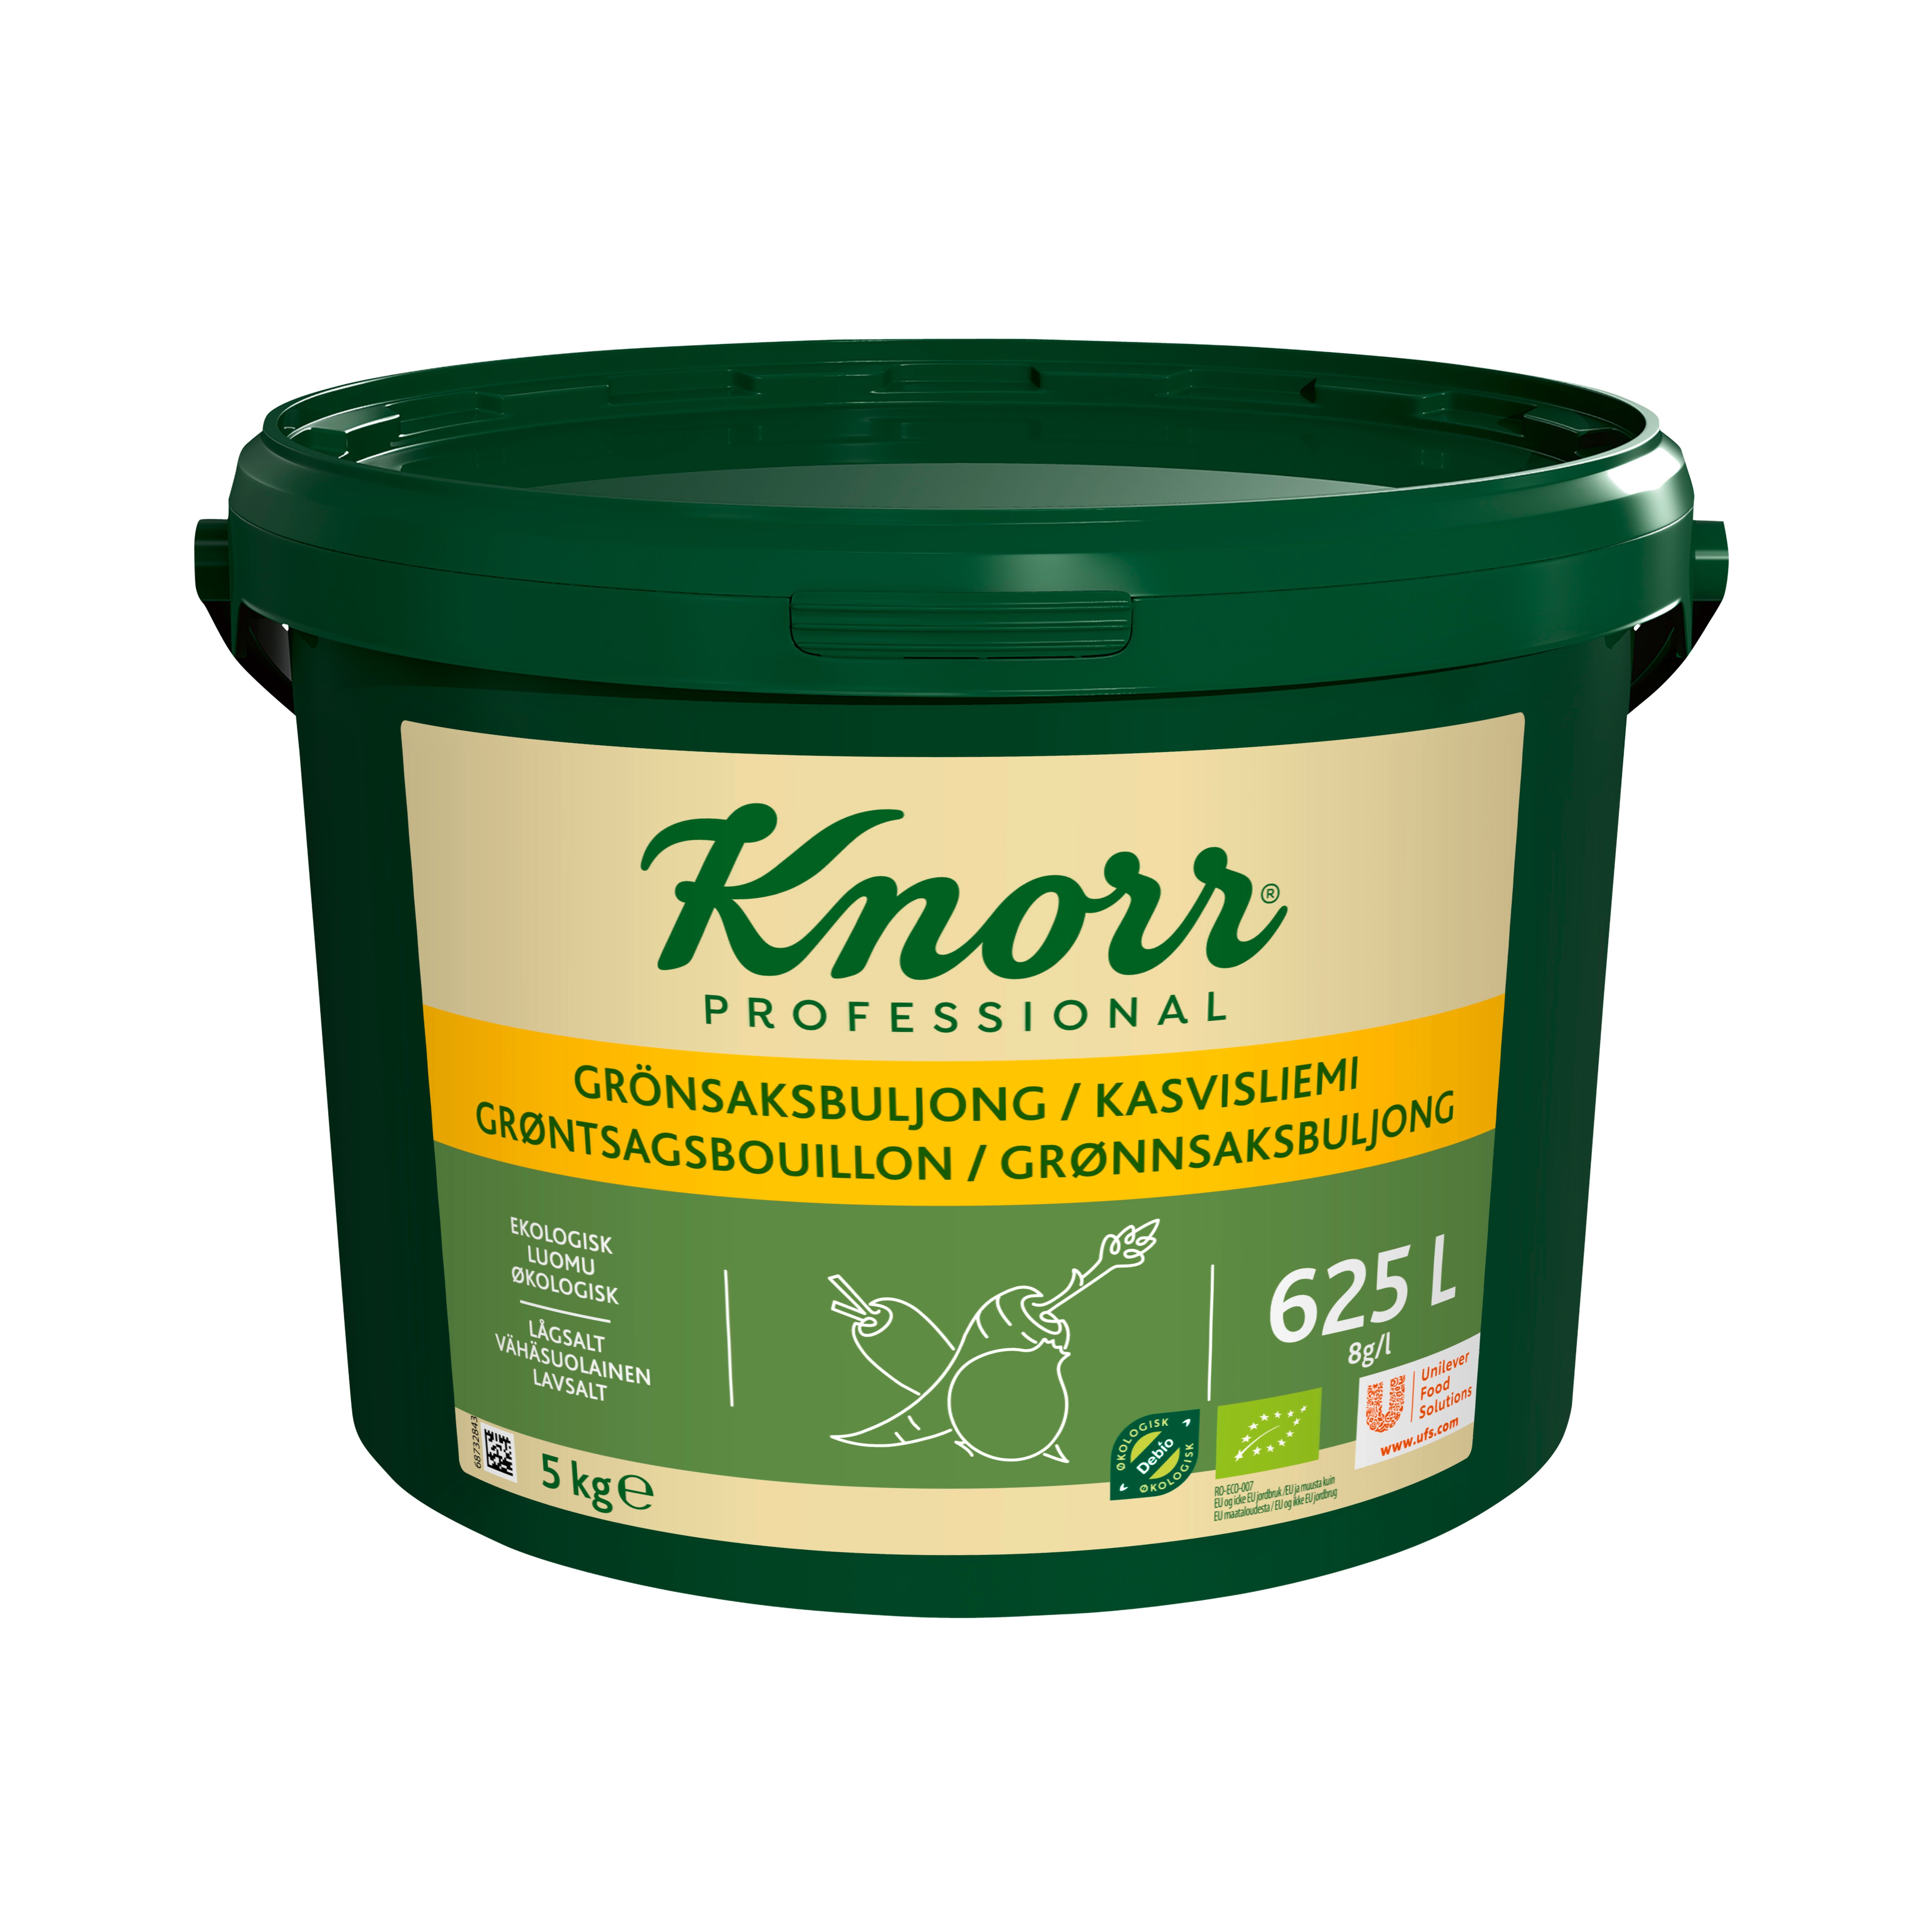 Knorr Grönsaksbuljong Ekologisk, pulver 1 x 5kg